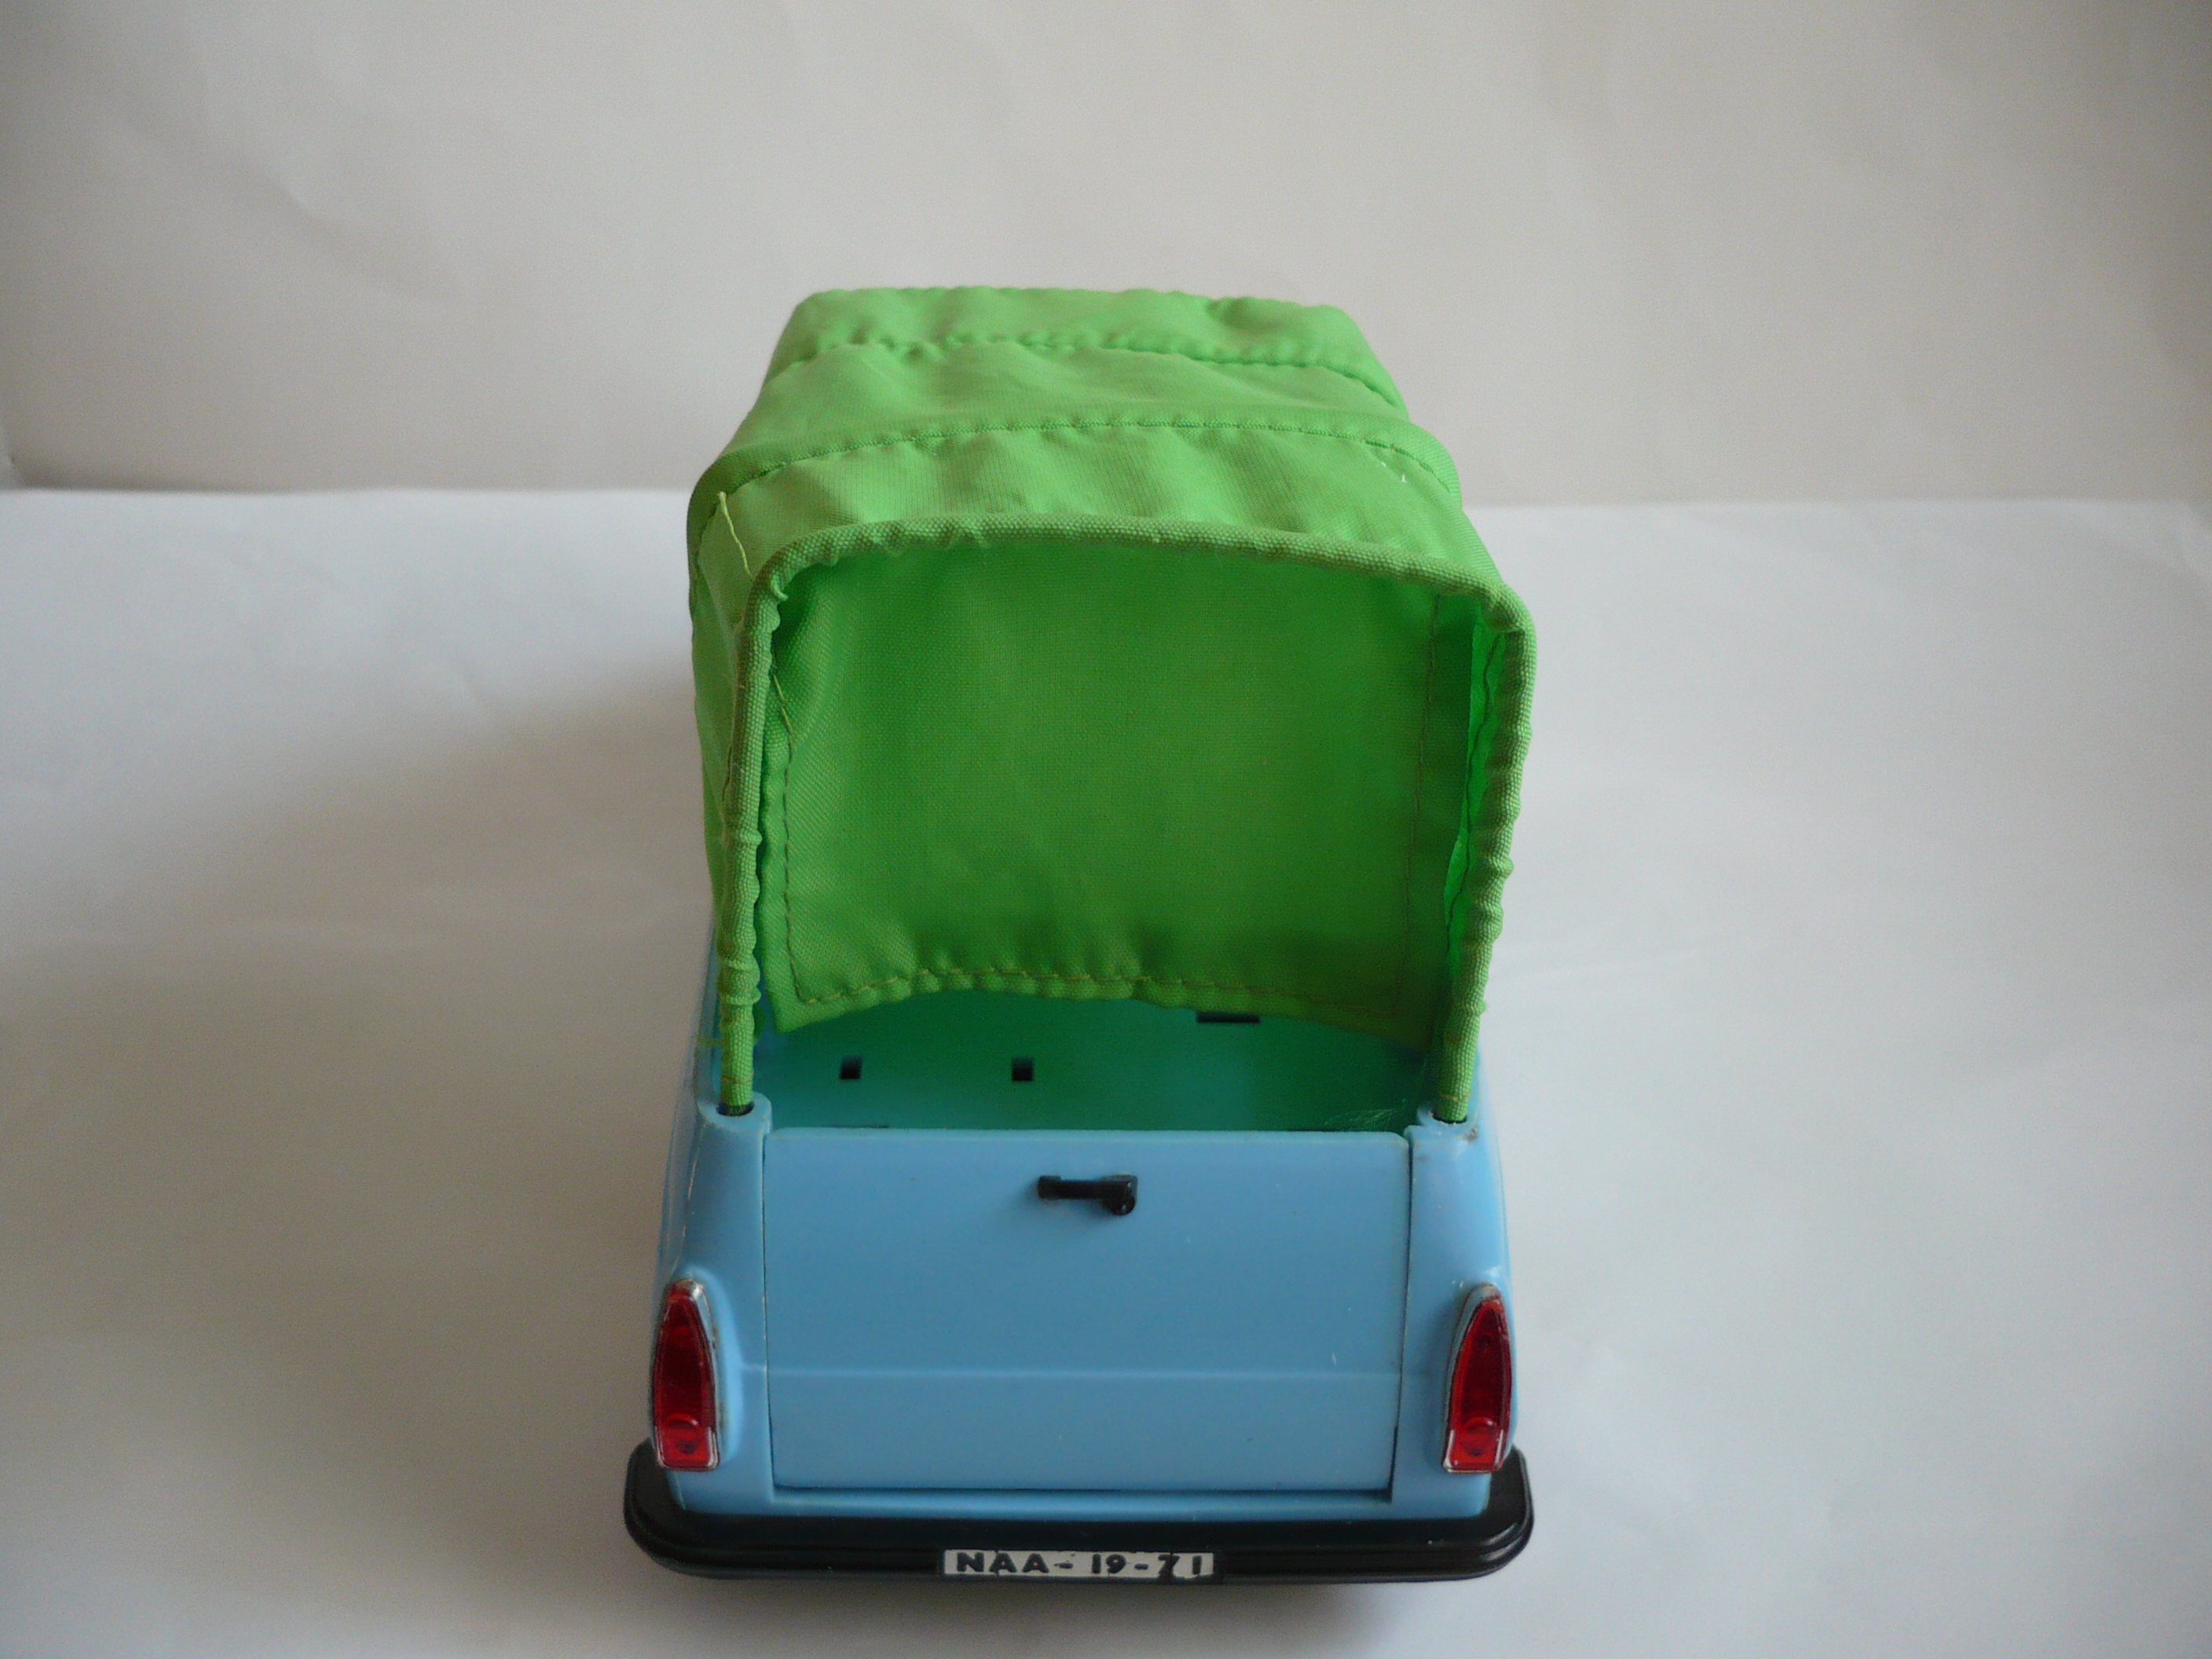 Škoda 1203 valník modrý s plachtou zelenou ze zadu.JPG